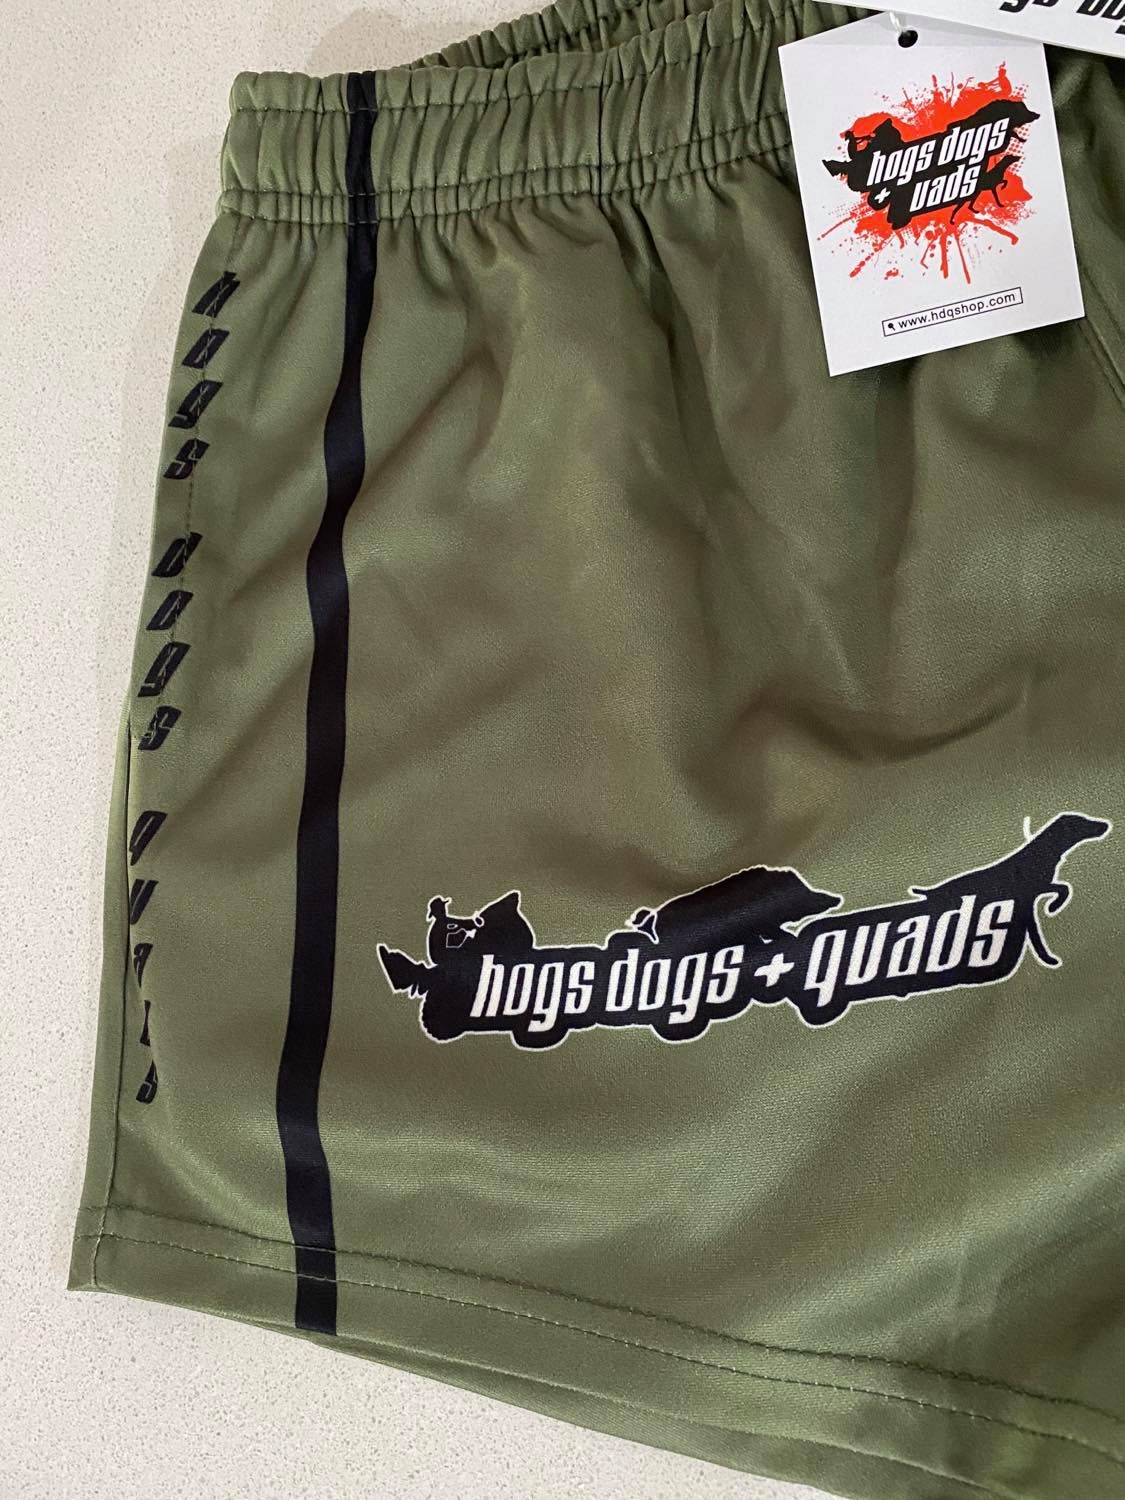 Footy Shorts - Buffalo - Hogs Dogs Quads Shop